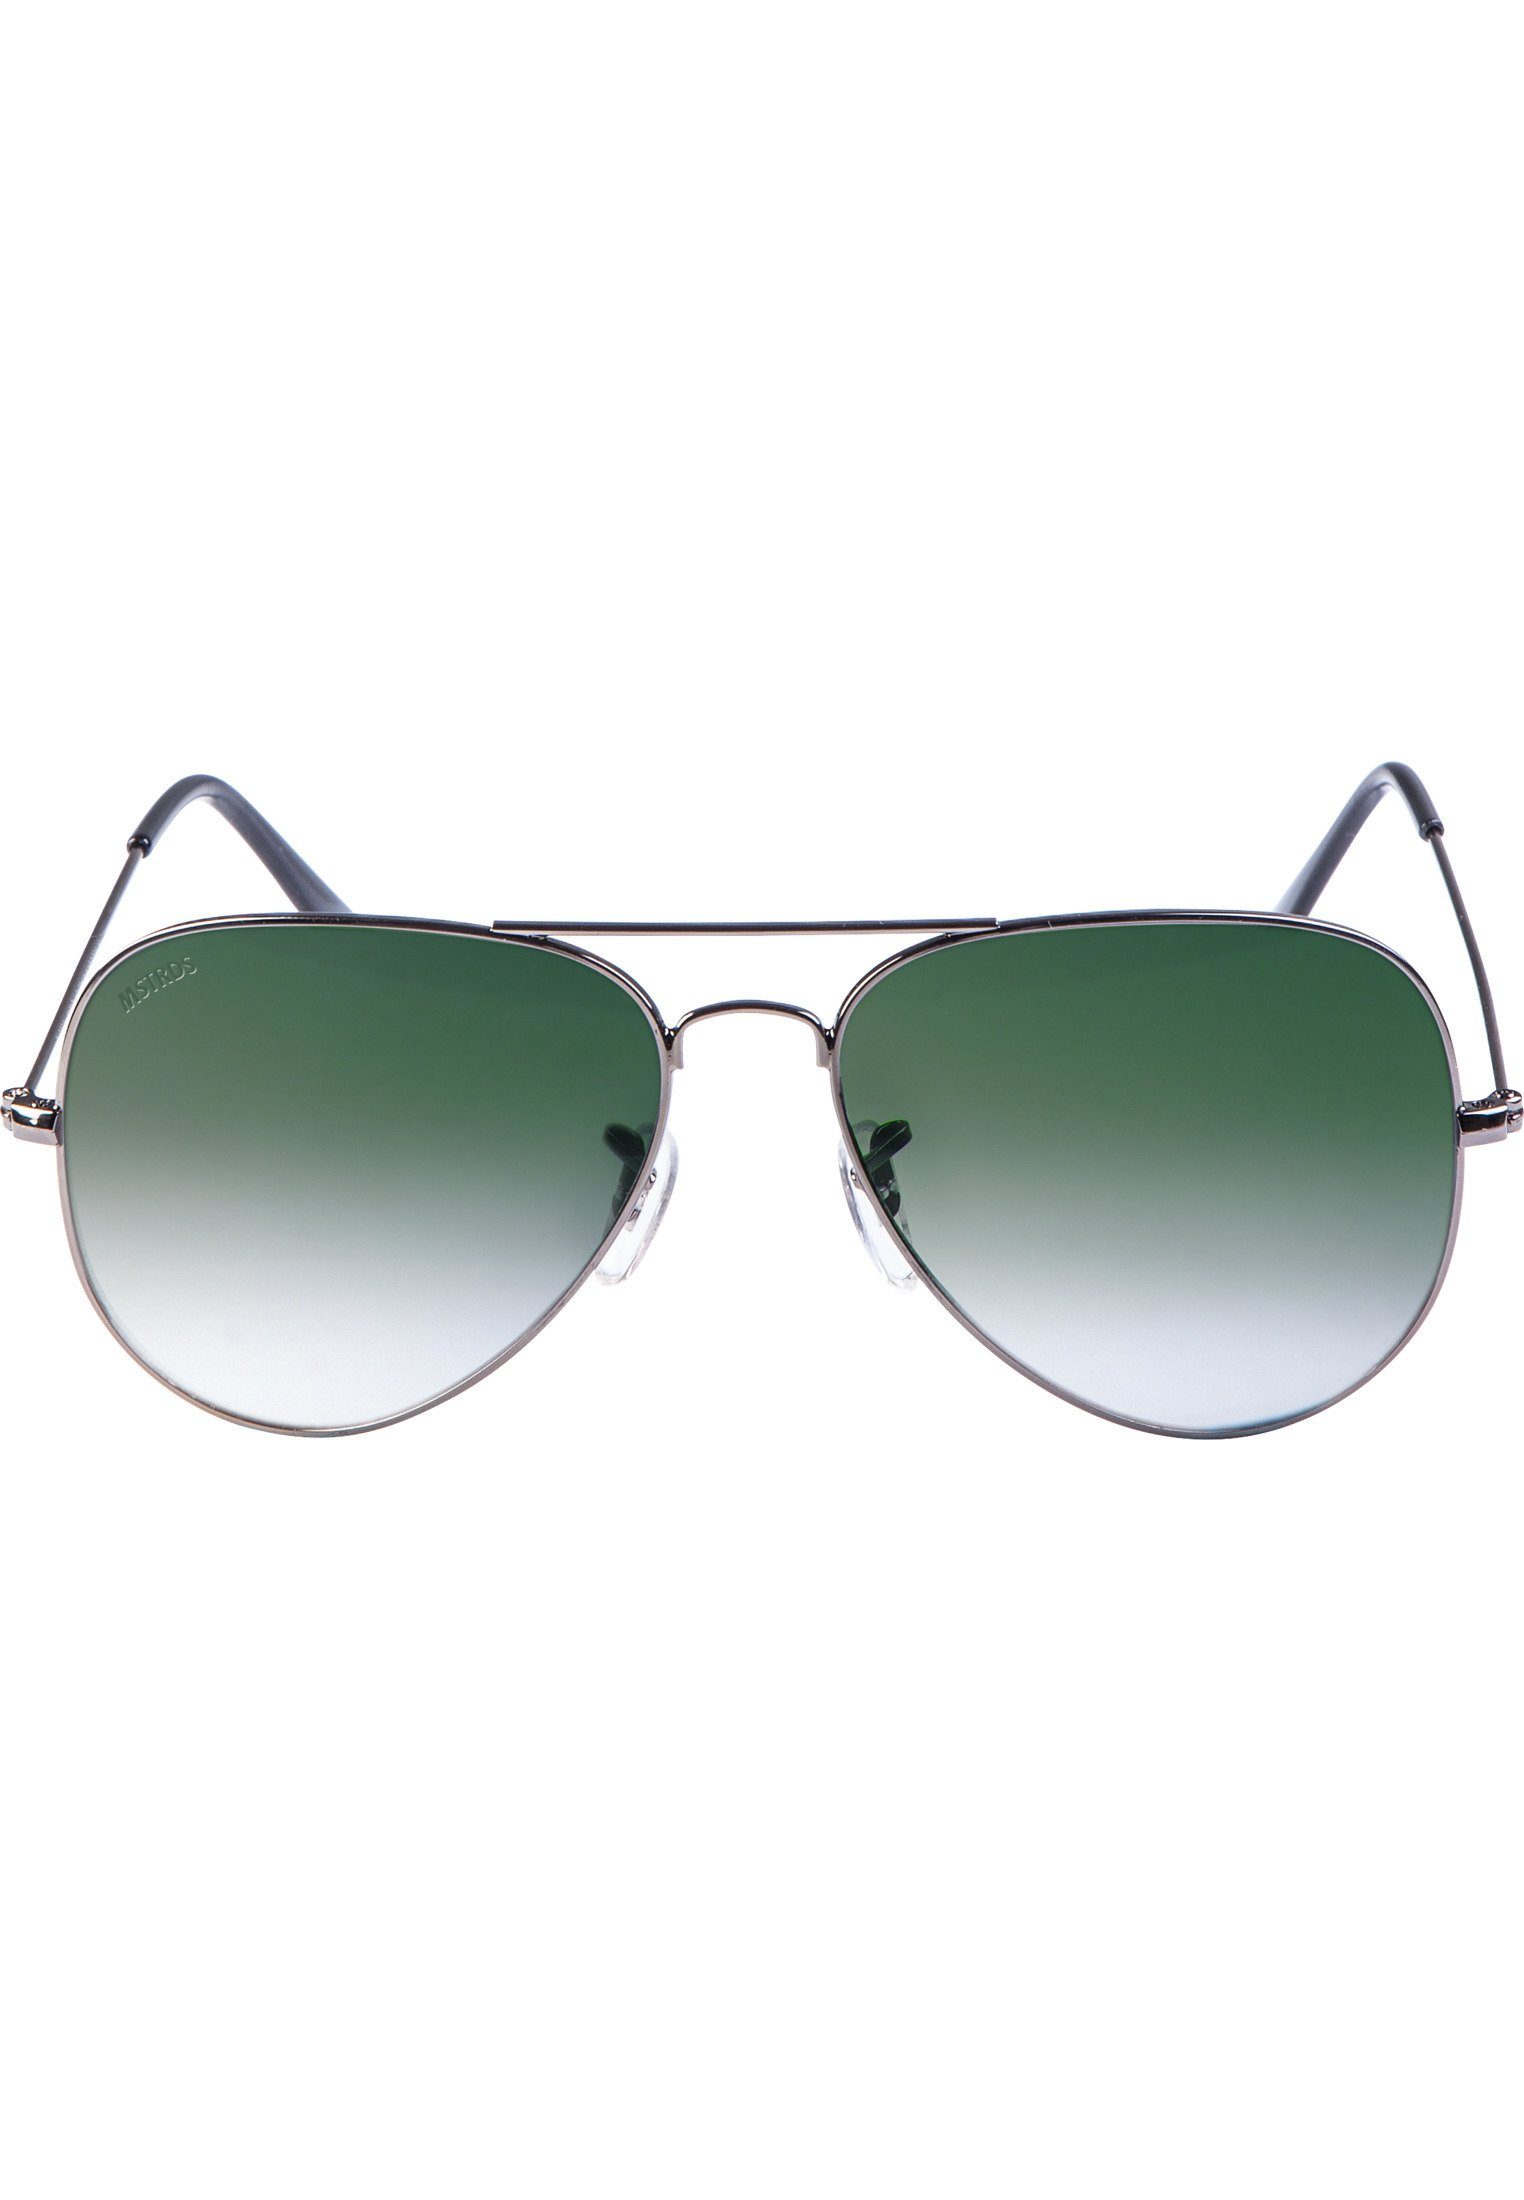 PureAv gun/green Sonnenbrille MSTRDS Accessoires Sunglasses